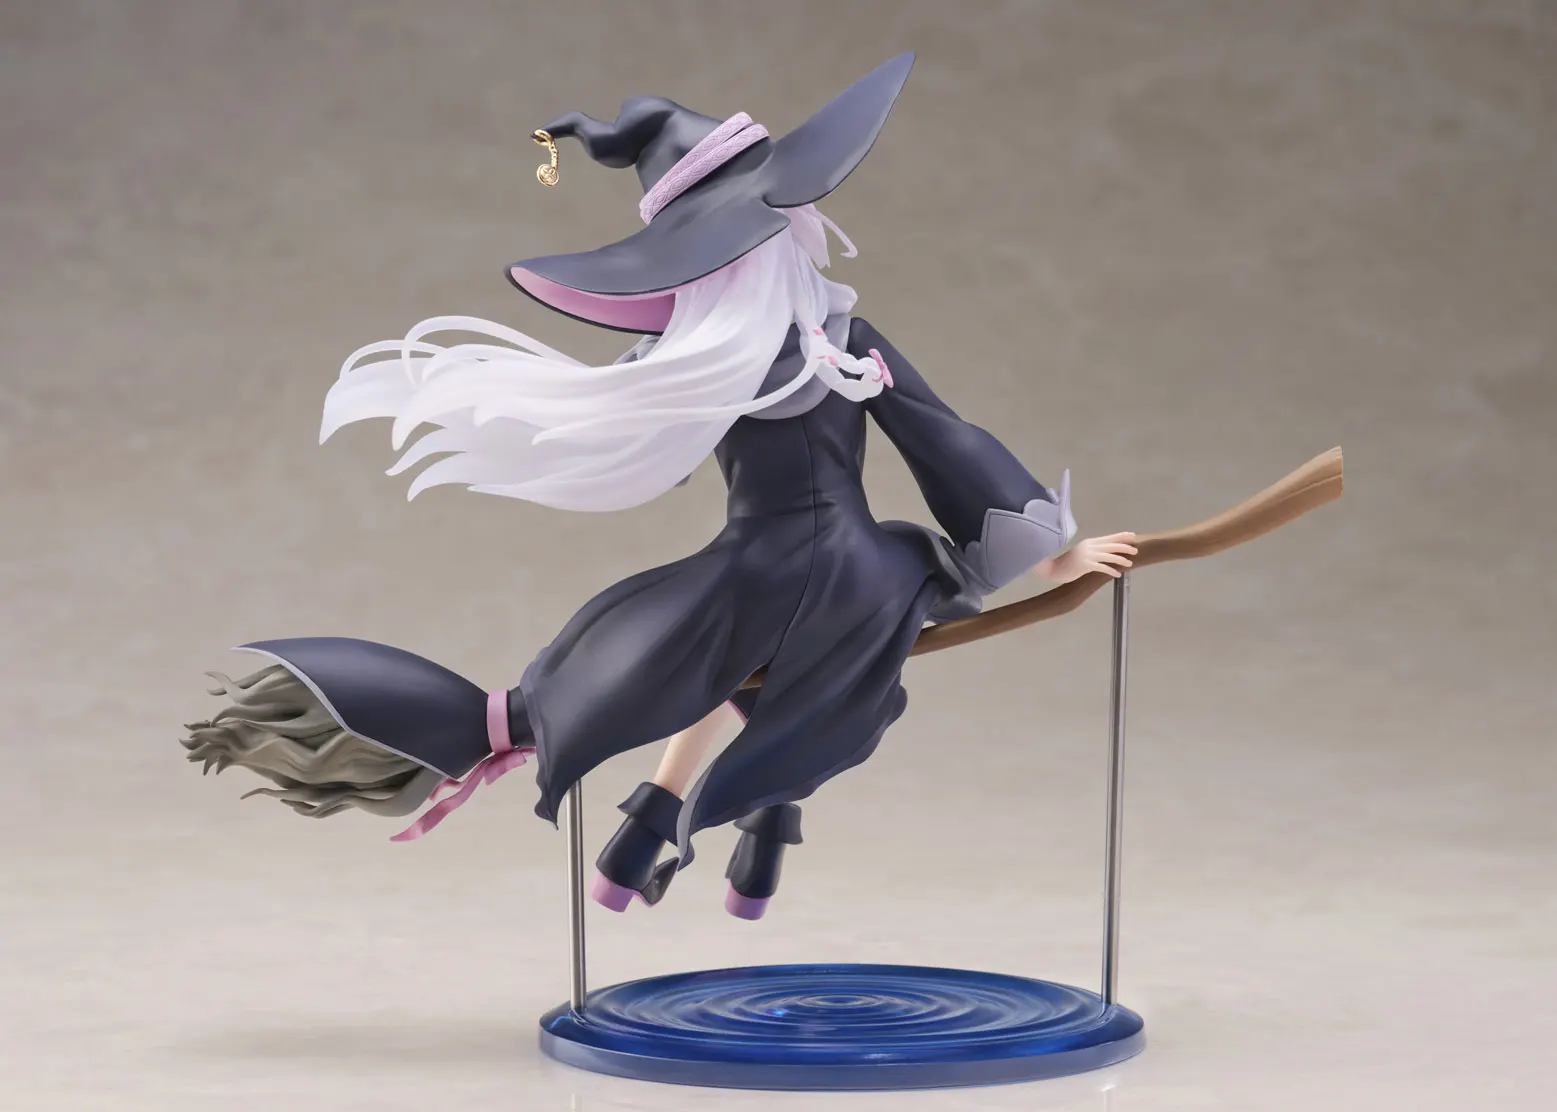 LCFUN Original TAITO Figure Elaina AMP Wandering Witch: The Journey of Elaina PVC Action Anime Model Colletion Toys images - 6